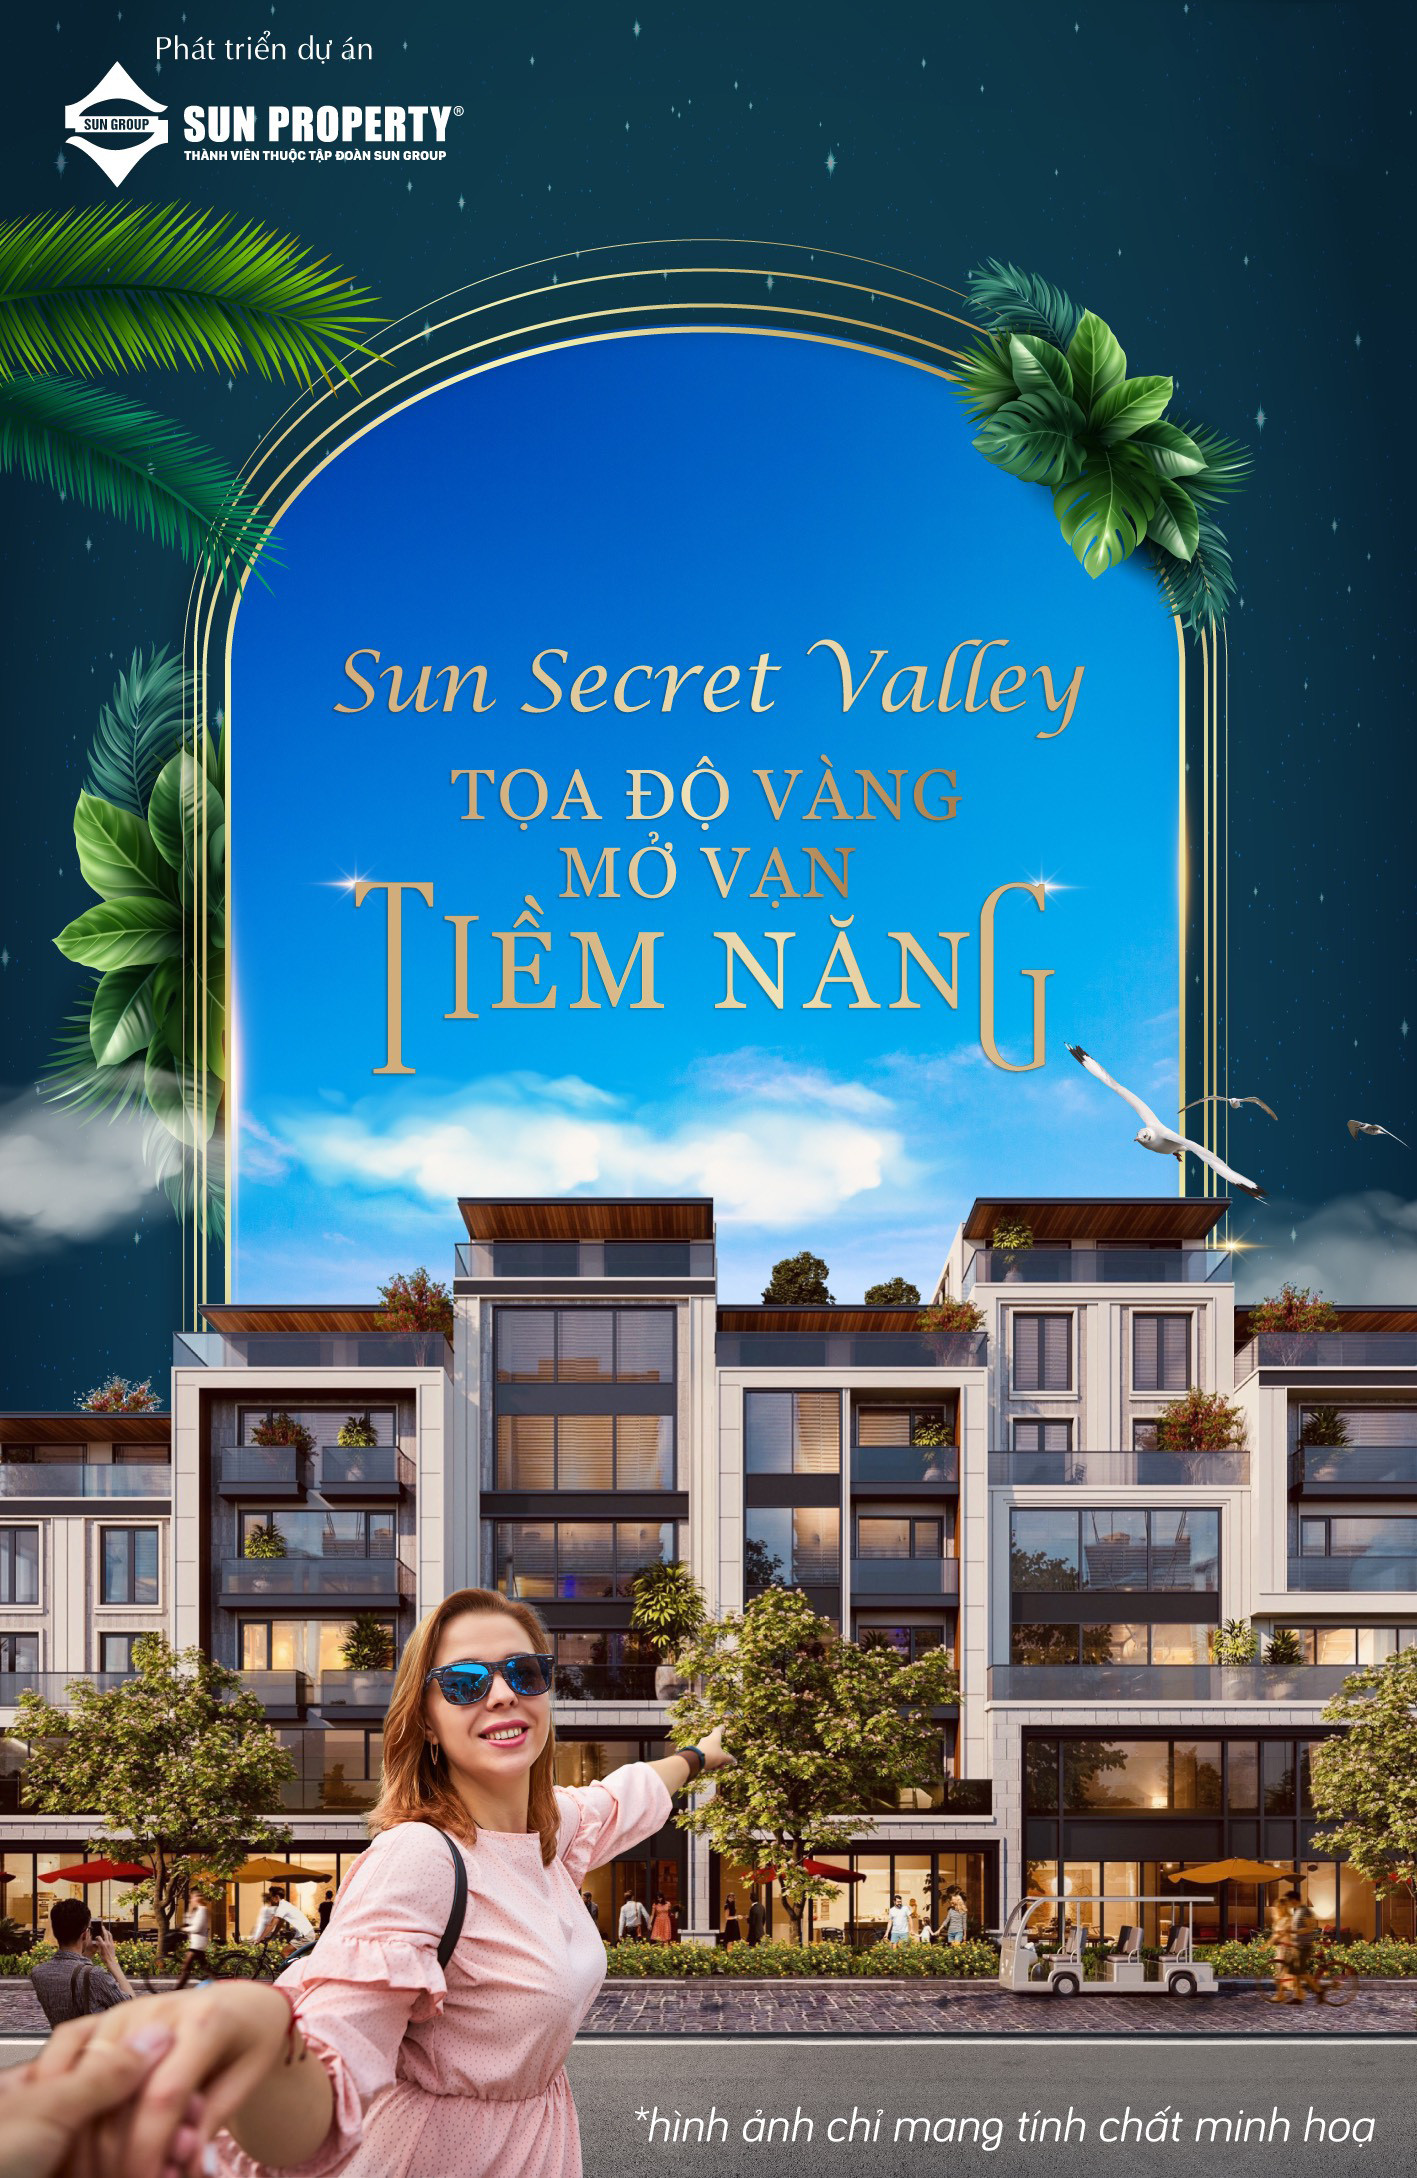 Sun Secret Valley - Tọa độ vàng mở vạn tiềm năng